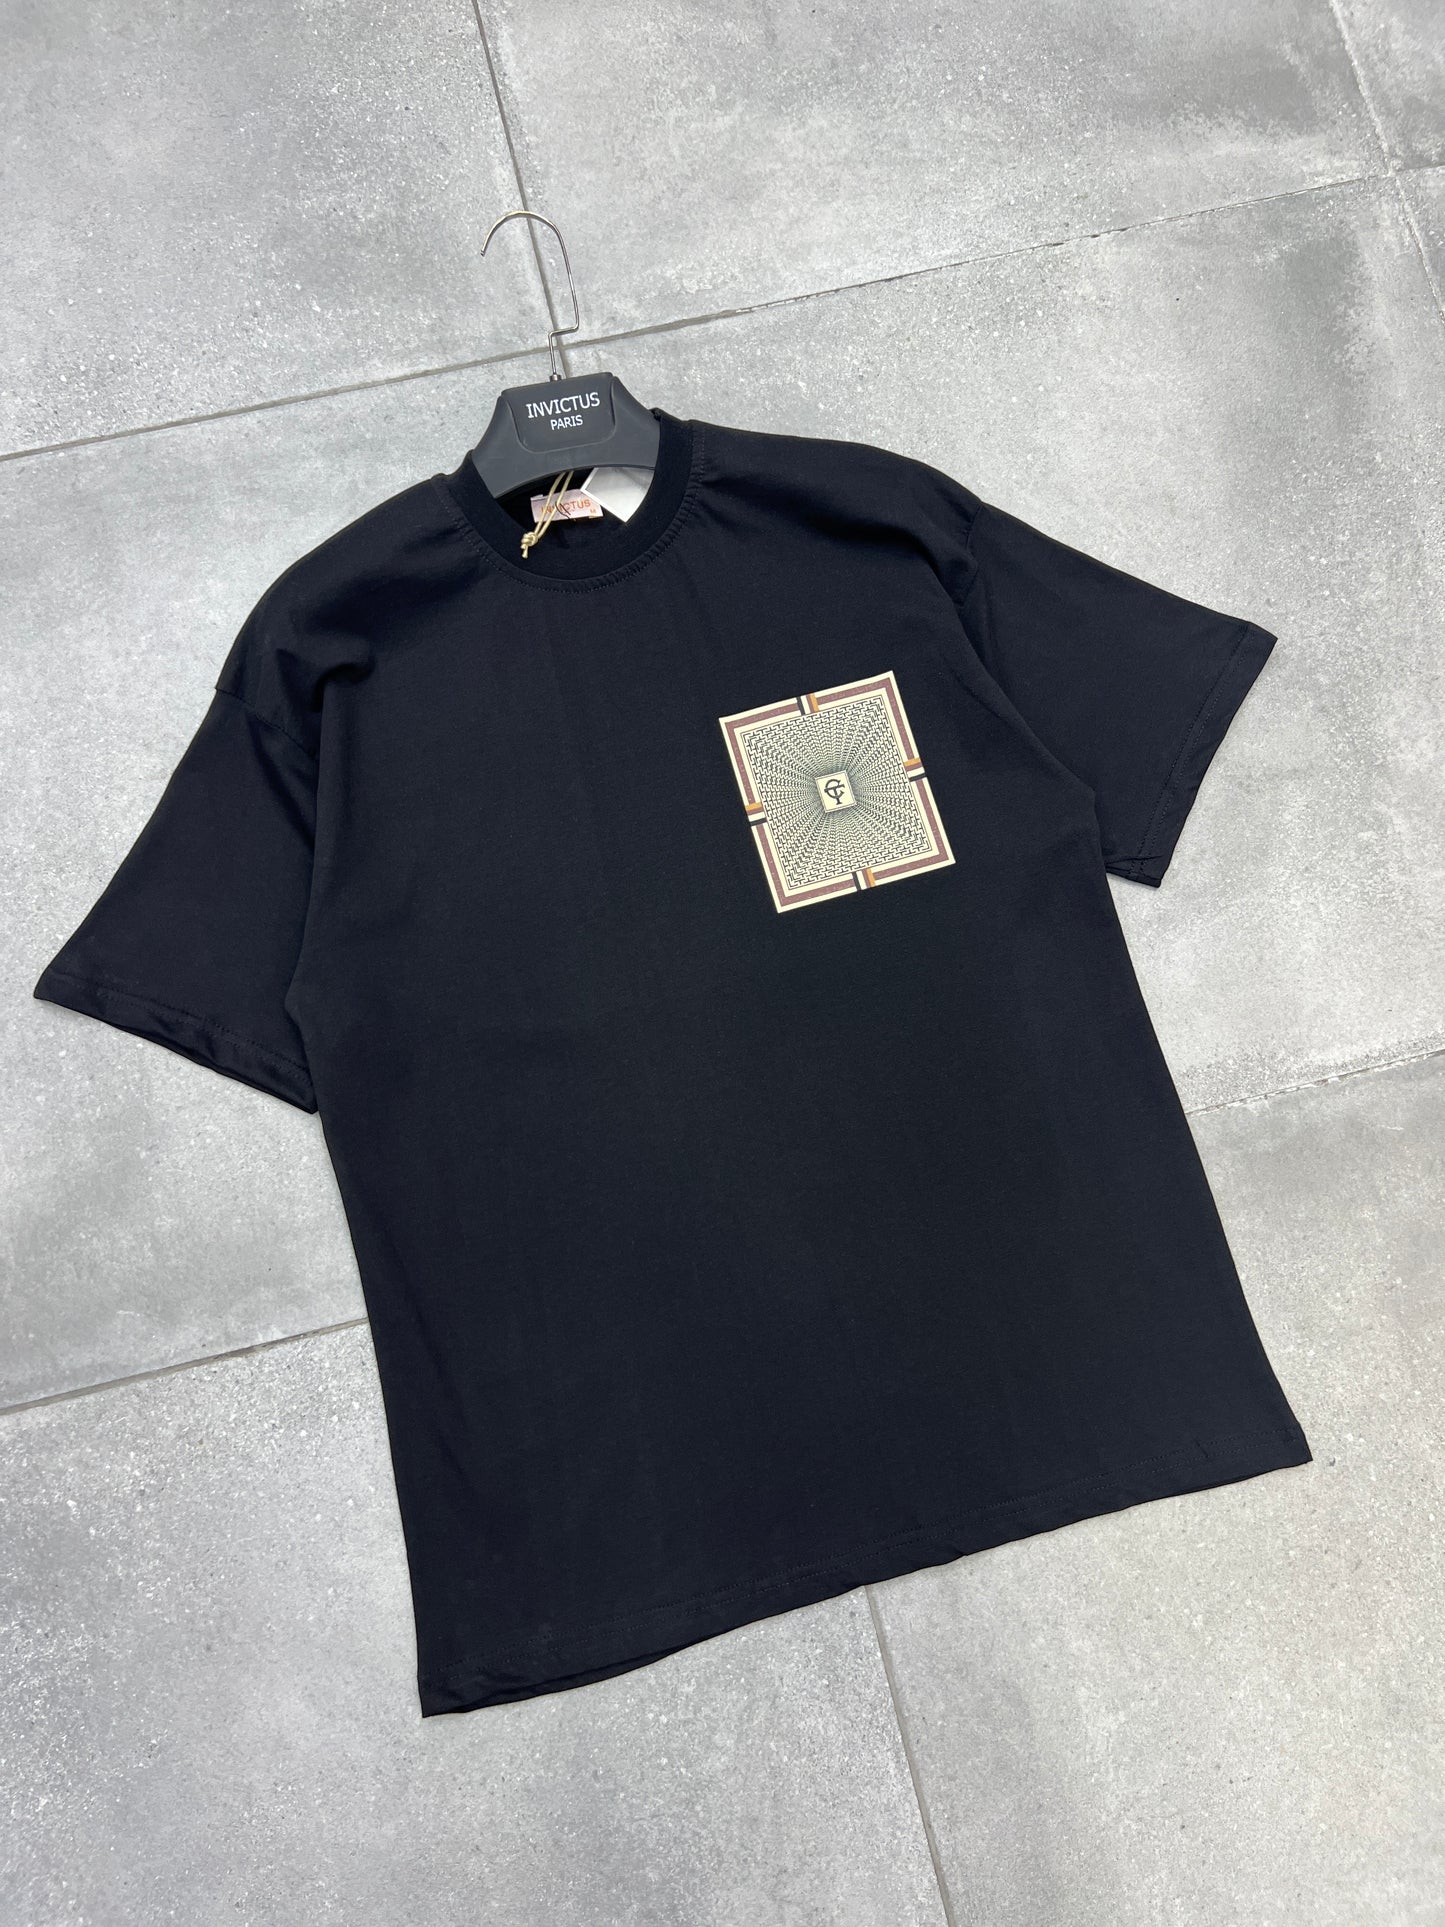 T-Shirt "C.T" Noir